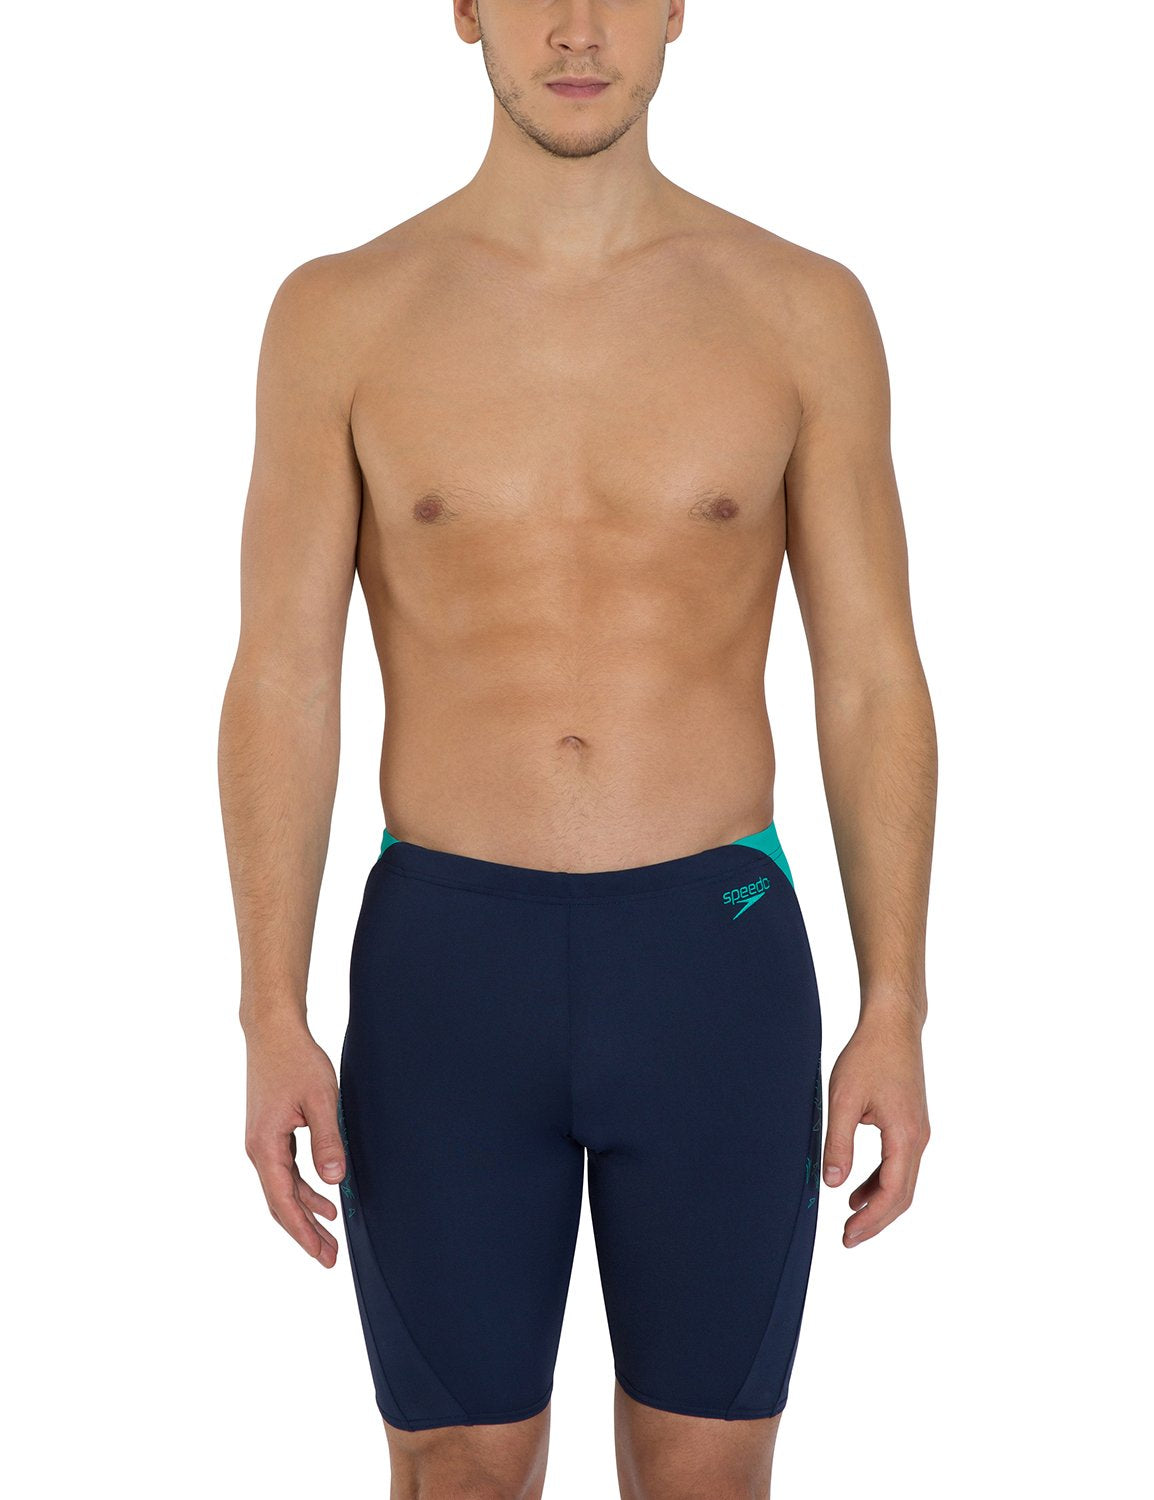 Speedo Men's Swimwear Boom Splice Jammer (Navy/Jade) - Best Price online Prokicksports.com